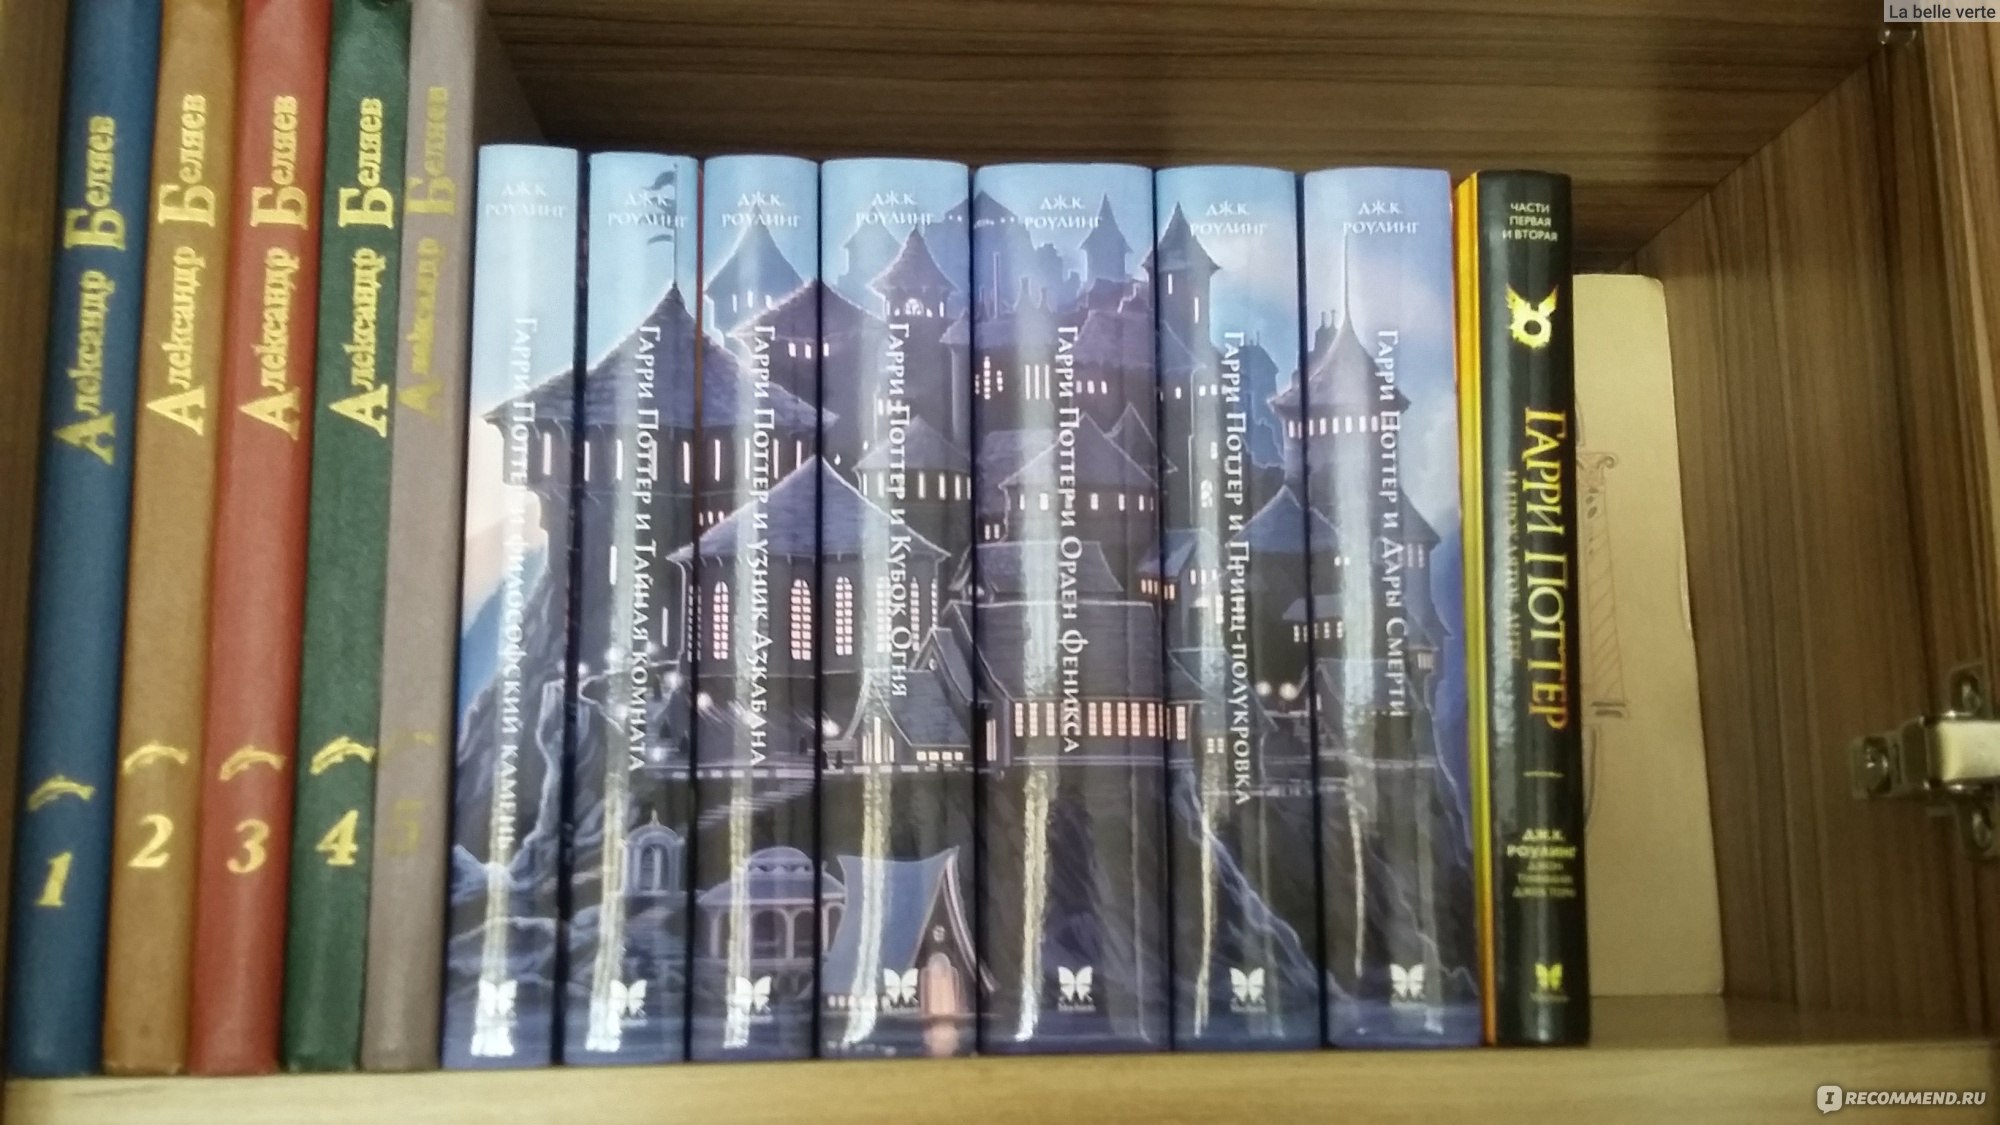 Гарри Поттер и принц-полукровка Джоан Роулинг книга